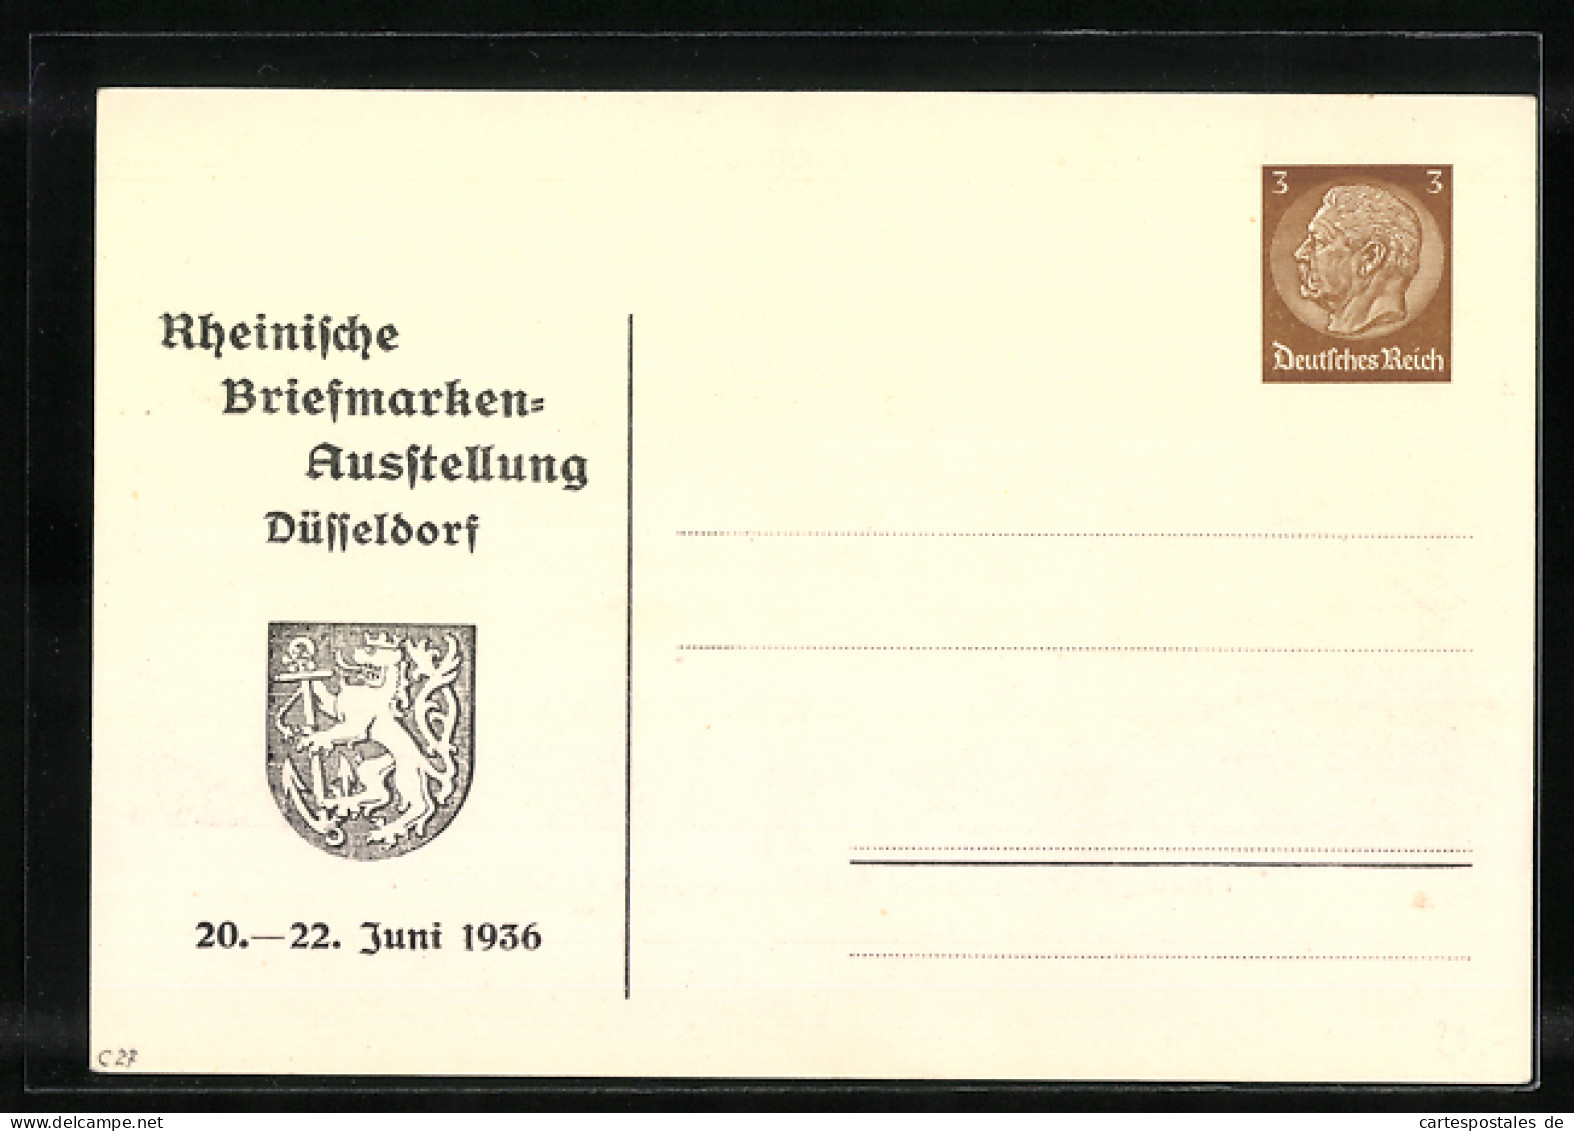 Künstler-AK Düsseldorf, Rheinische Briefmarken-Ausstellung 1936, Zeppelin-Zug, Empfang Der Ausstellungsgäste, Ganzs  - Postkarten